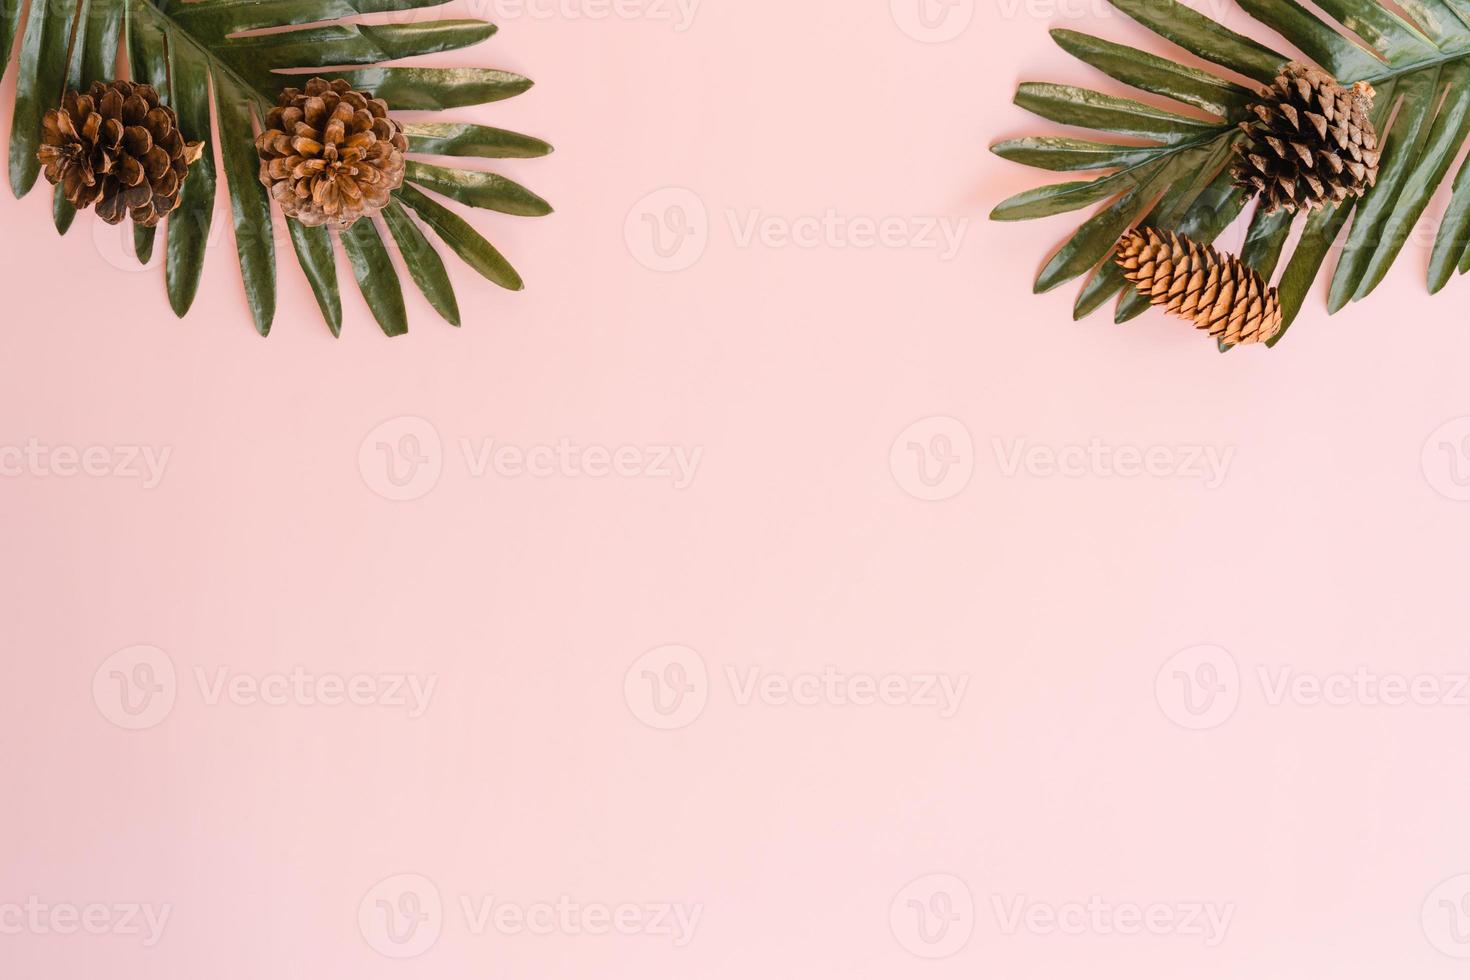 foto plana creativa de viajes vacaciones primavera o verano moda tropical. Accesorios de playa de vista superior sobre fondo de color rosa pastel con espacio en blanco para texto. Fotografía de espacio de copia de vista superior.